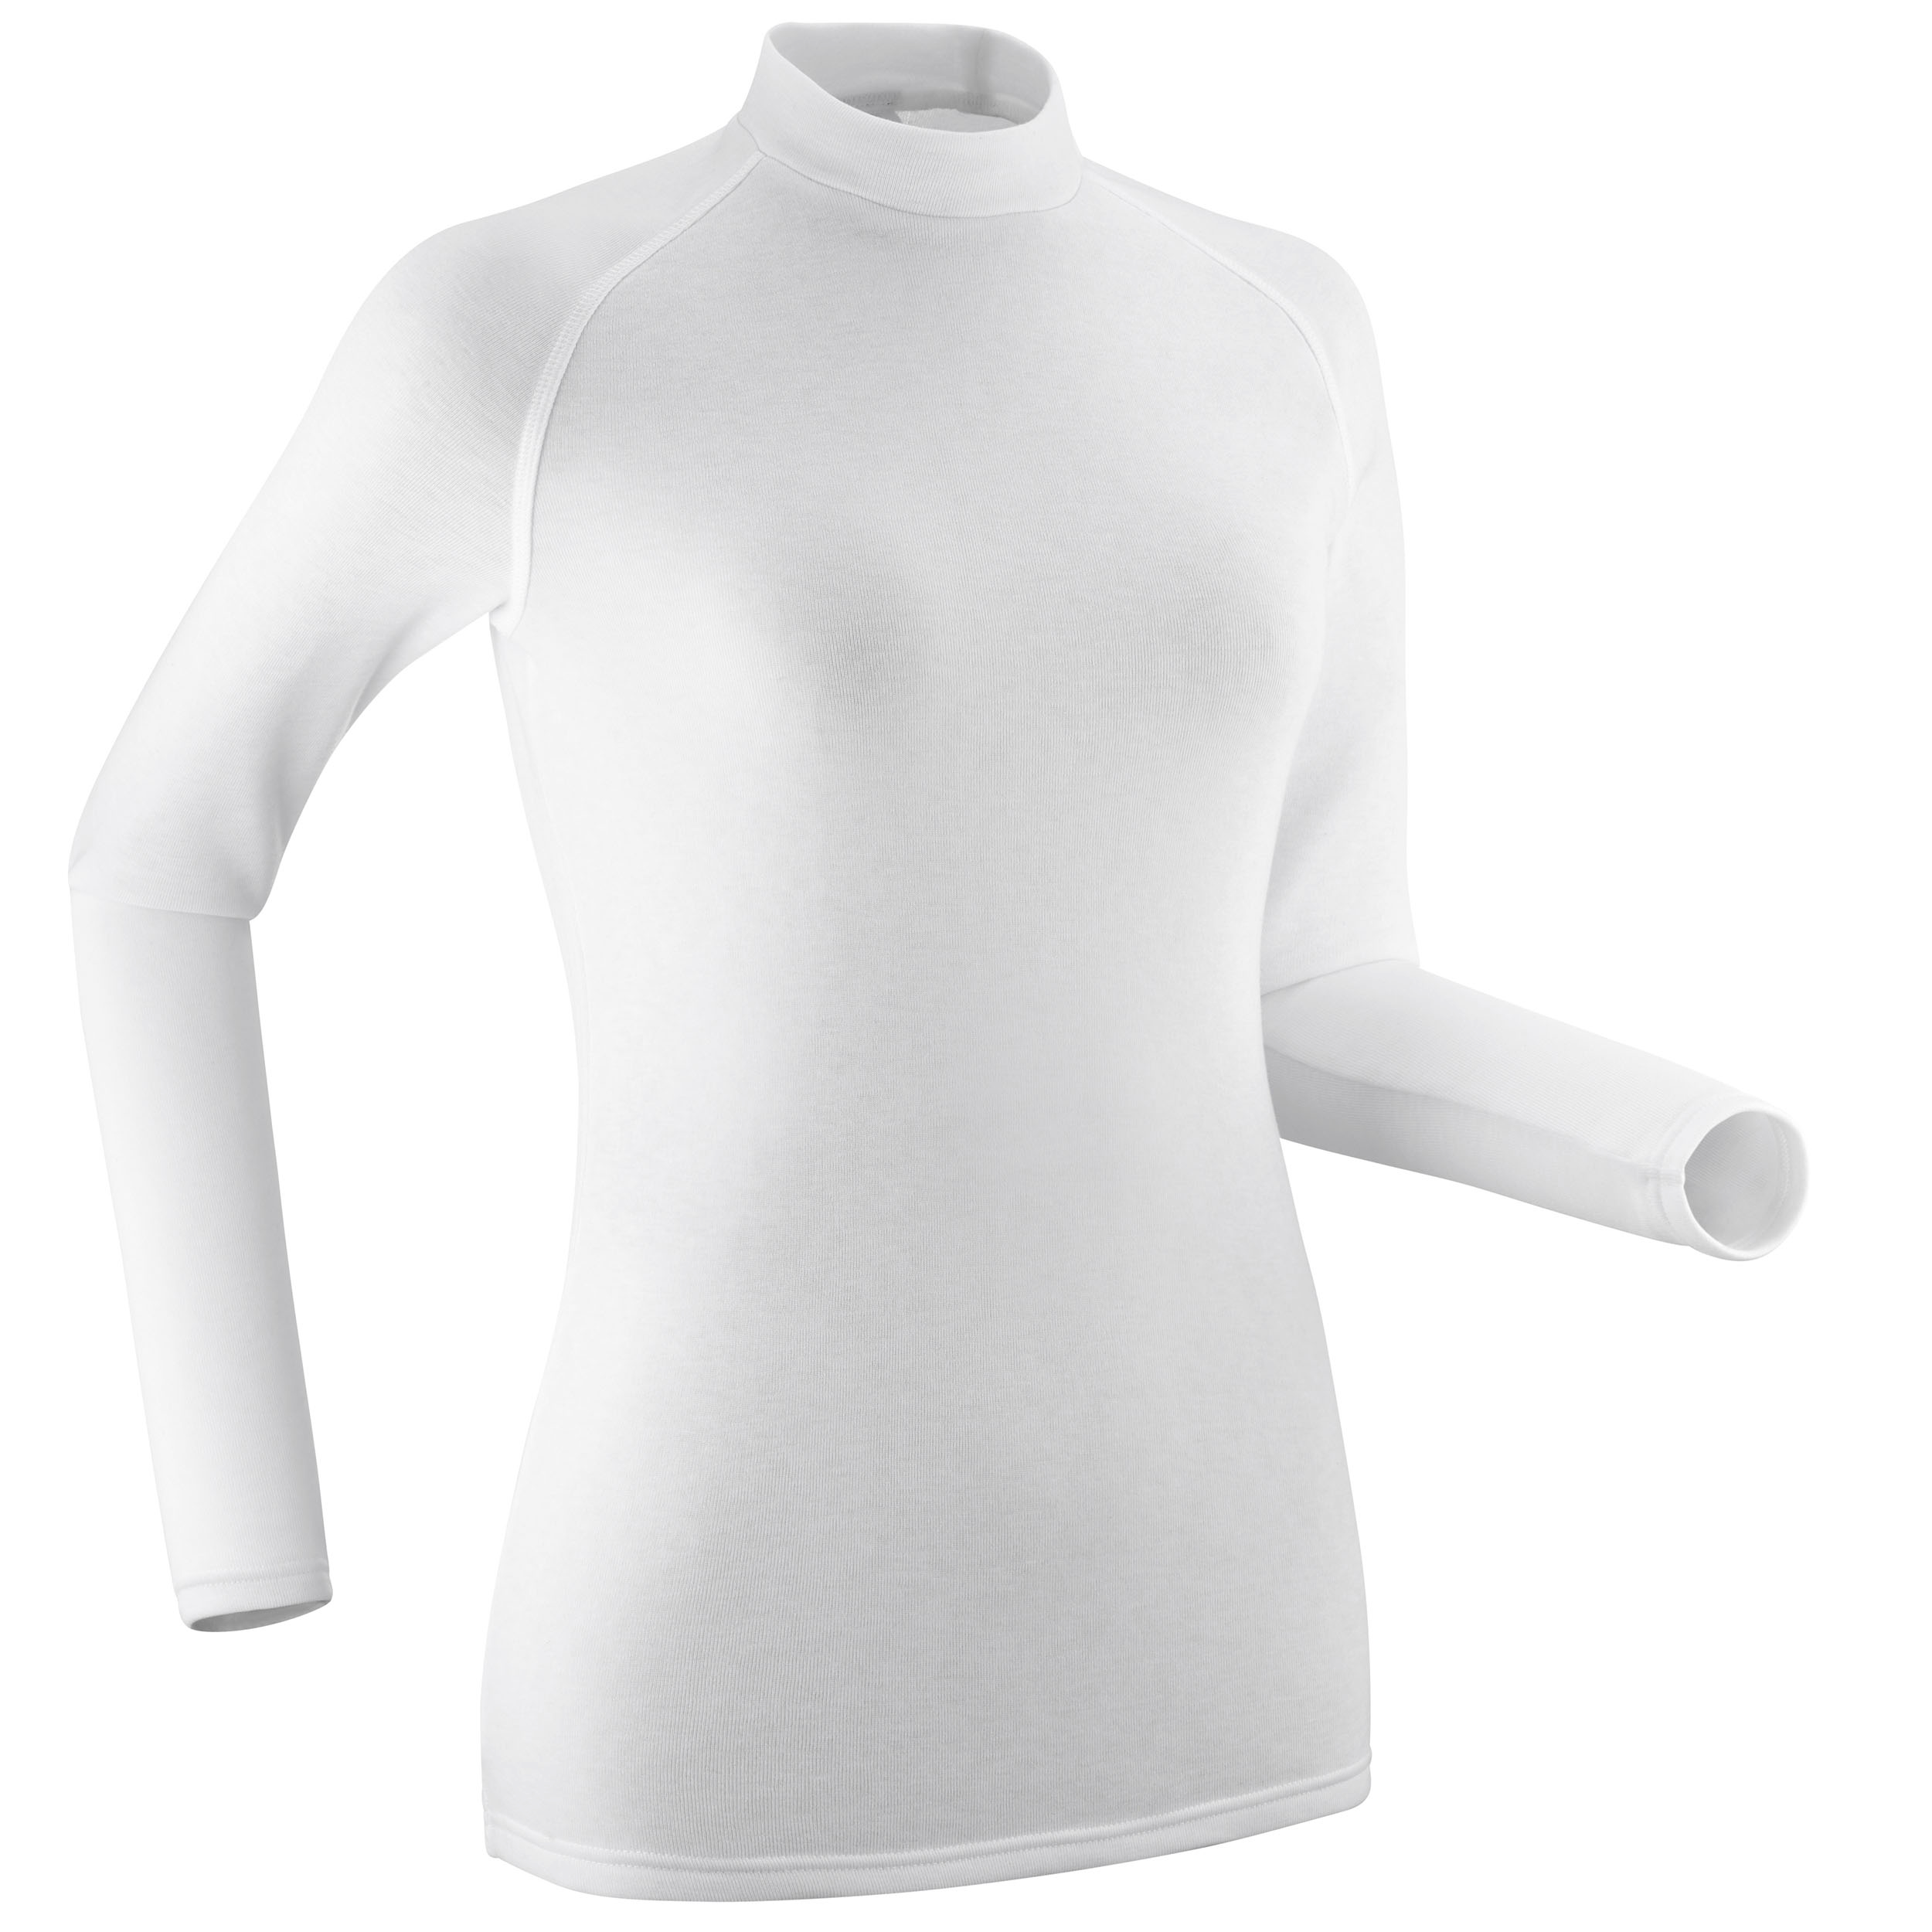 Sous-vêtement thermique de ski femme - BL 100 haut -  Blanc